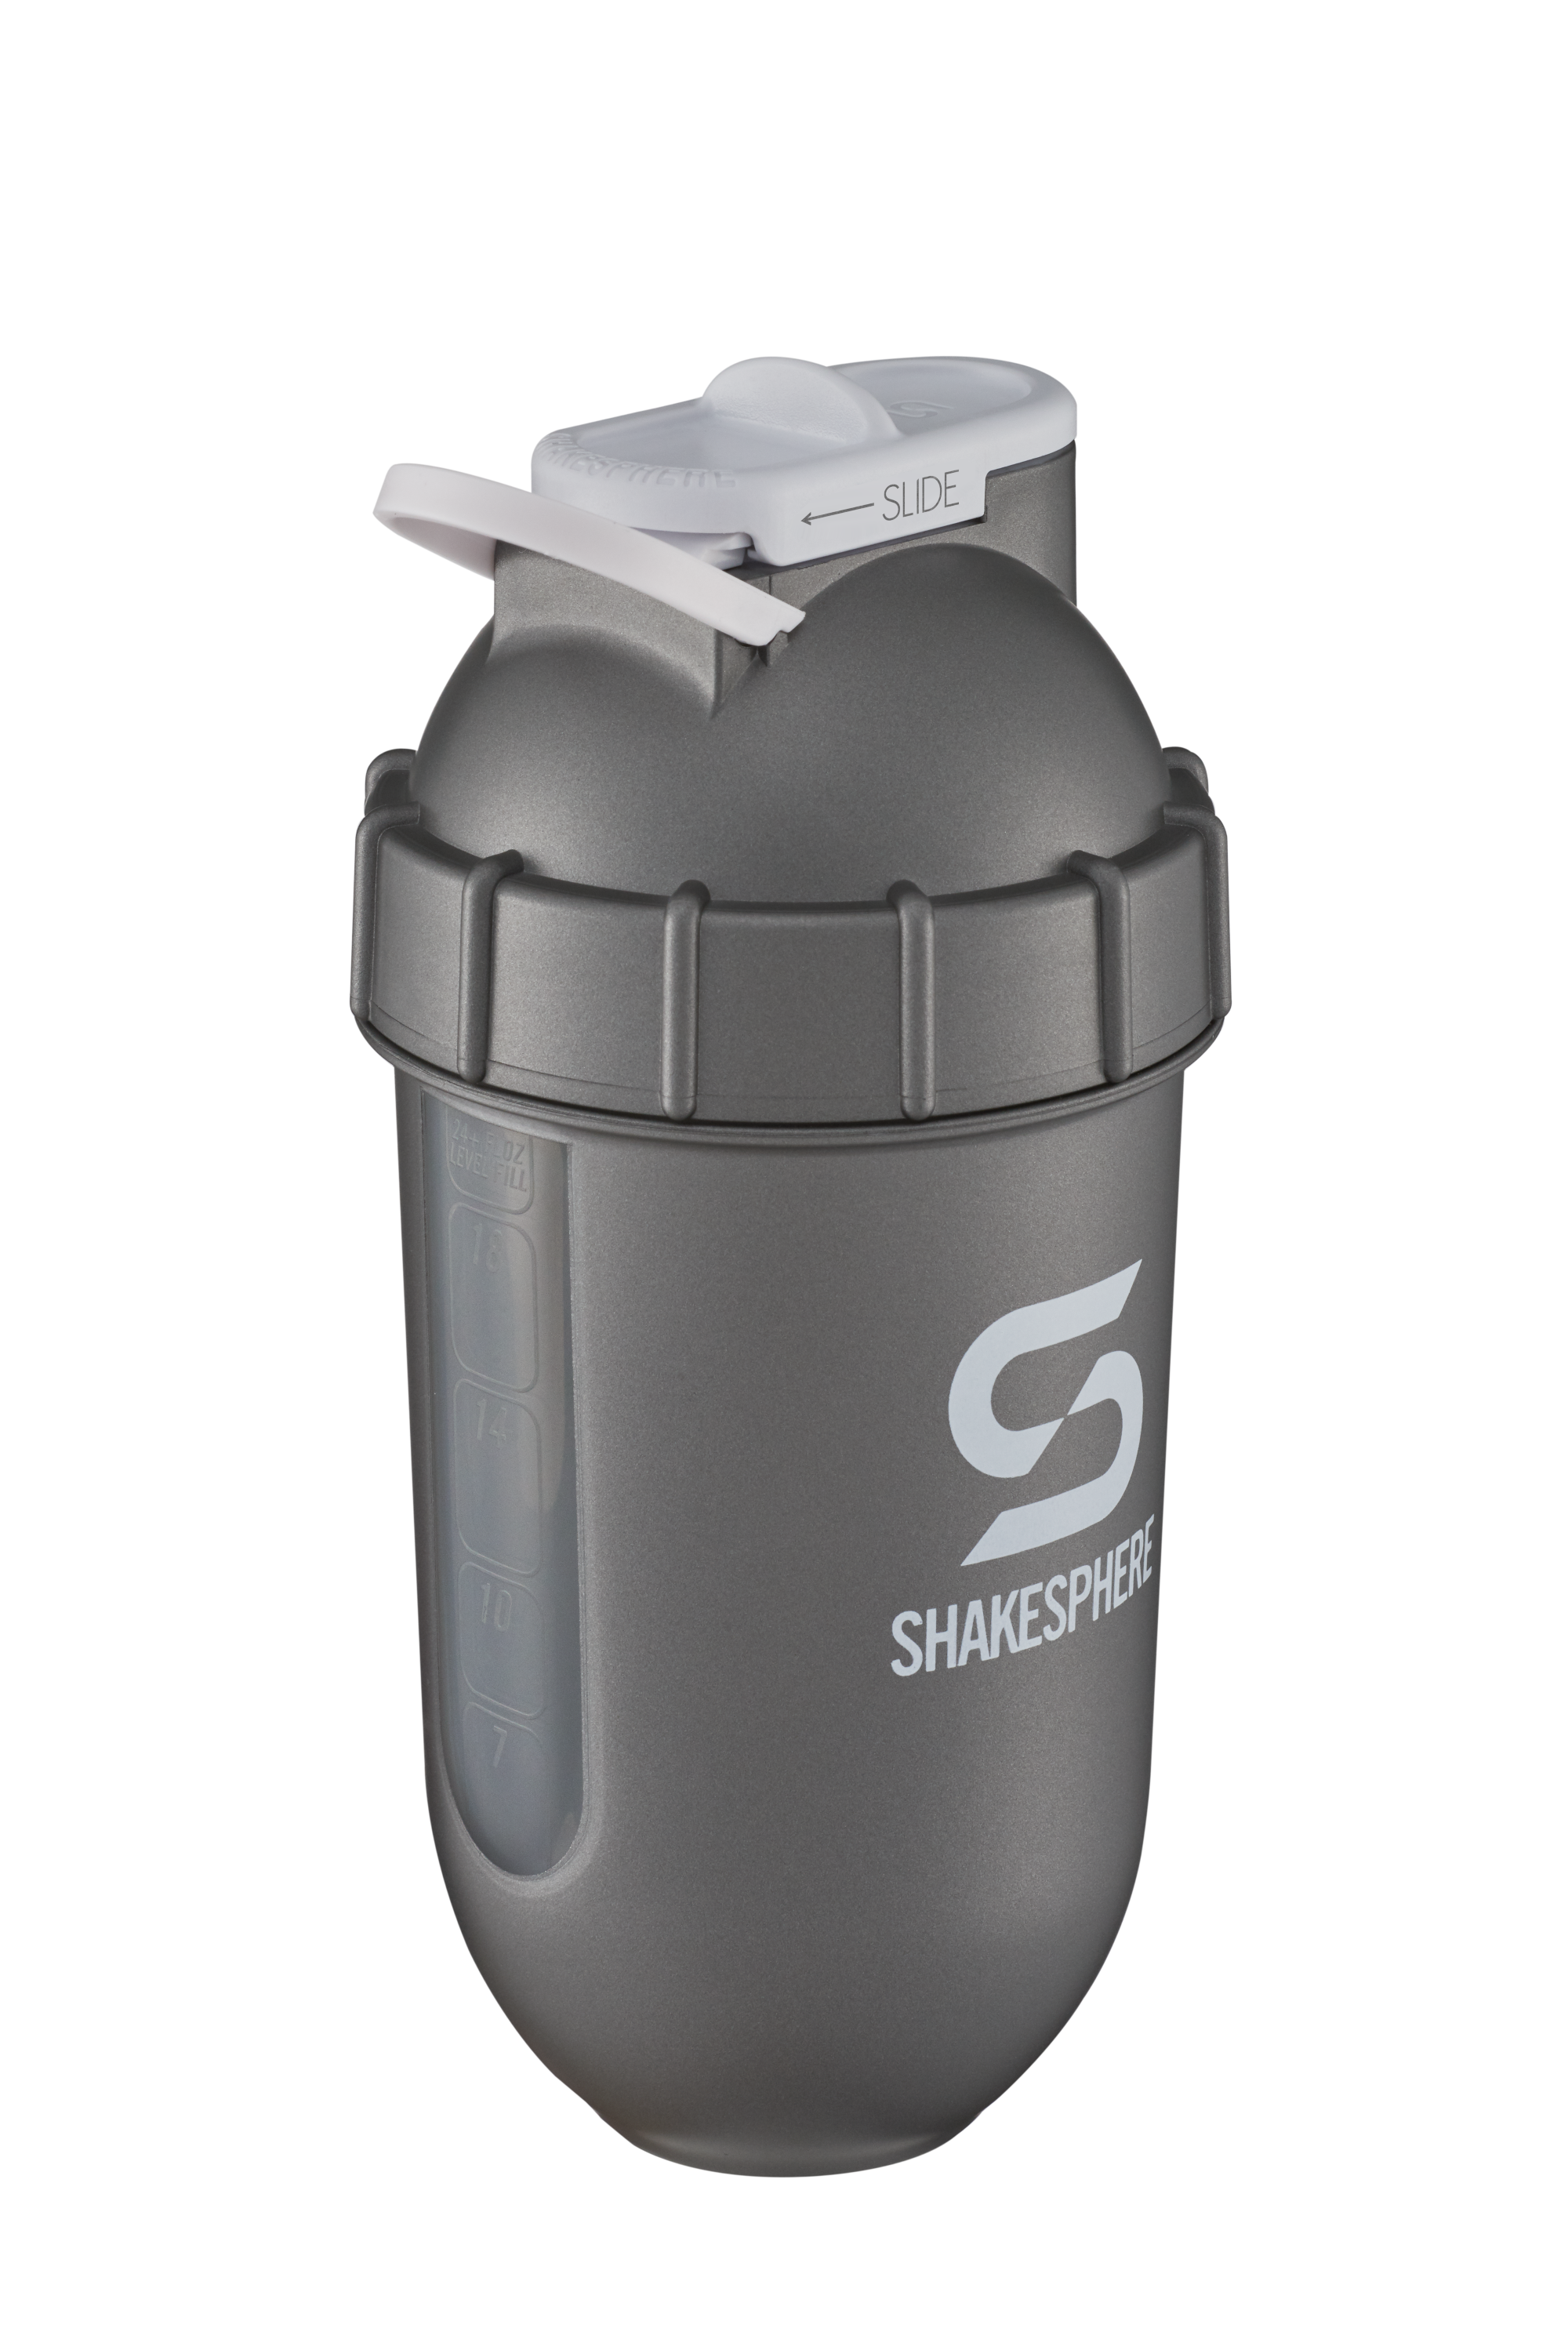 Reforce Stainless-Steel Protein Shaker Bottle - White - 1 Item